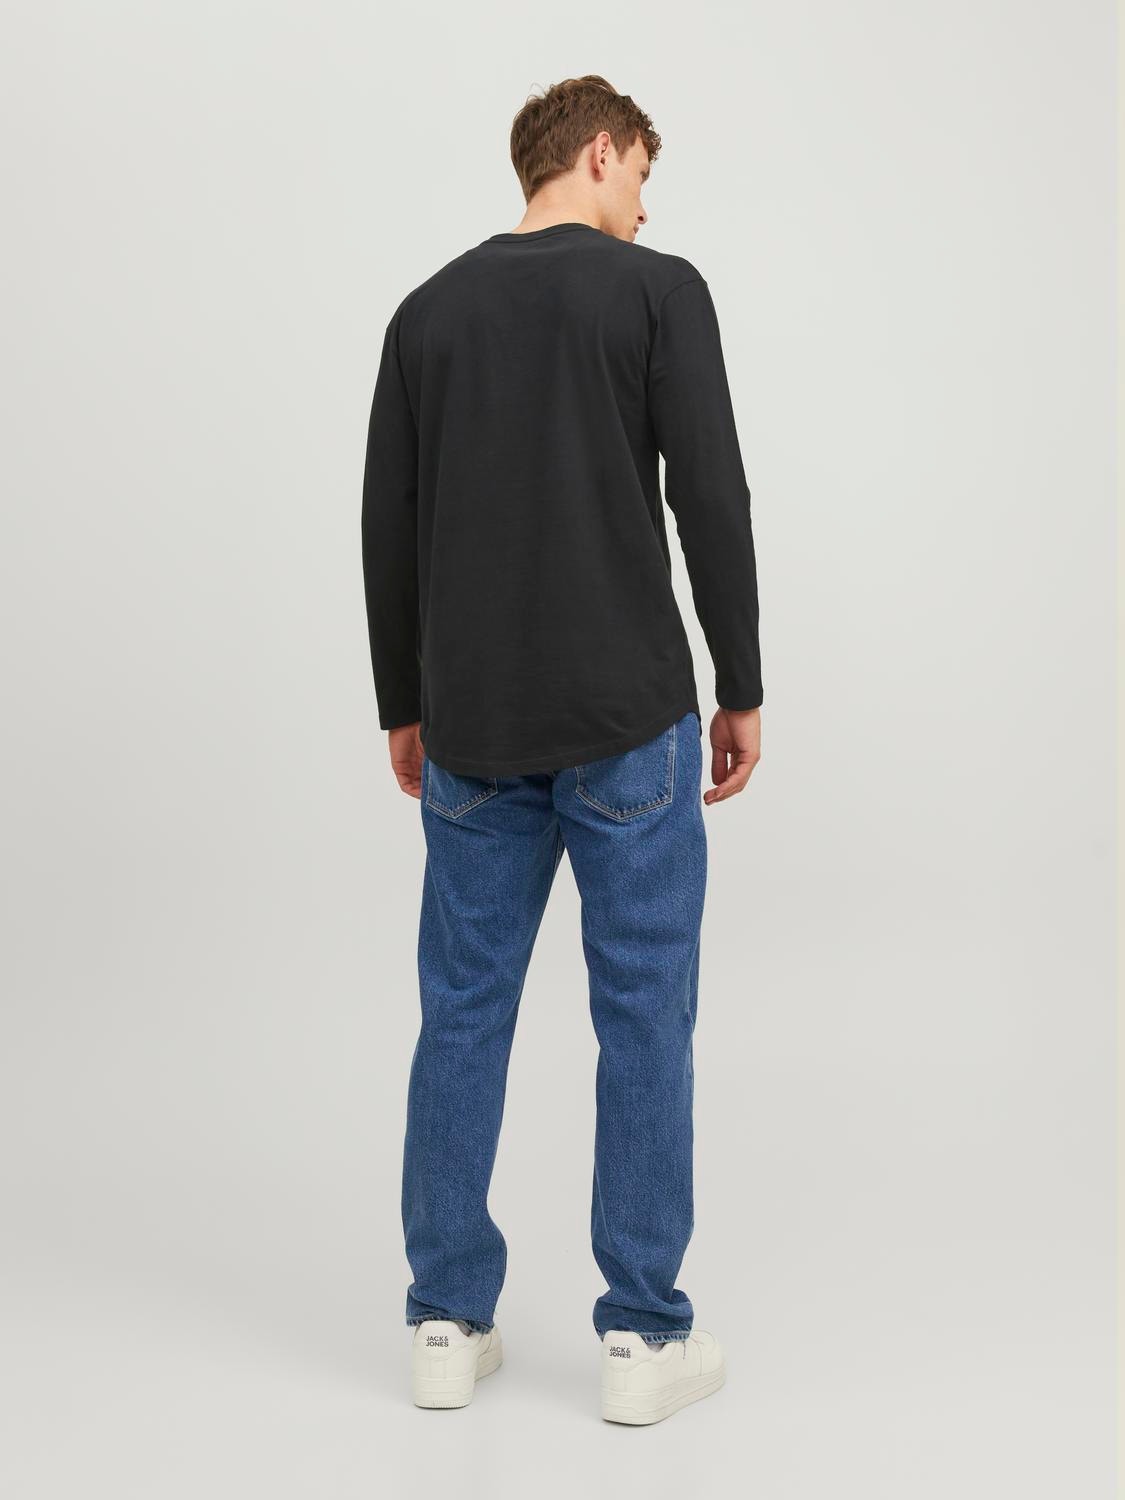 Jack & Jones Einfarbig Rundhals T-shirt -Black - 12190128